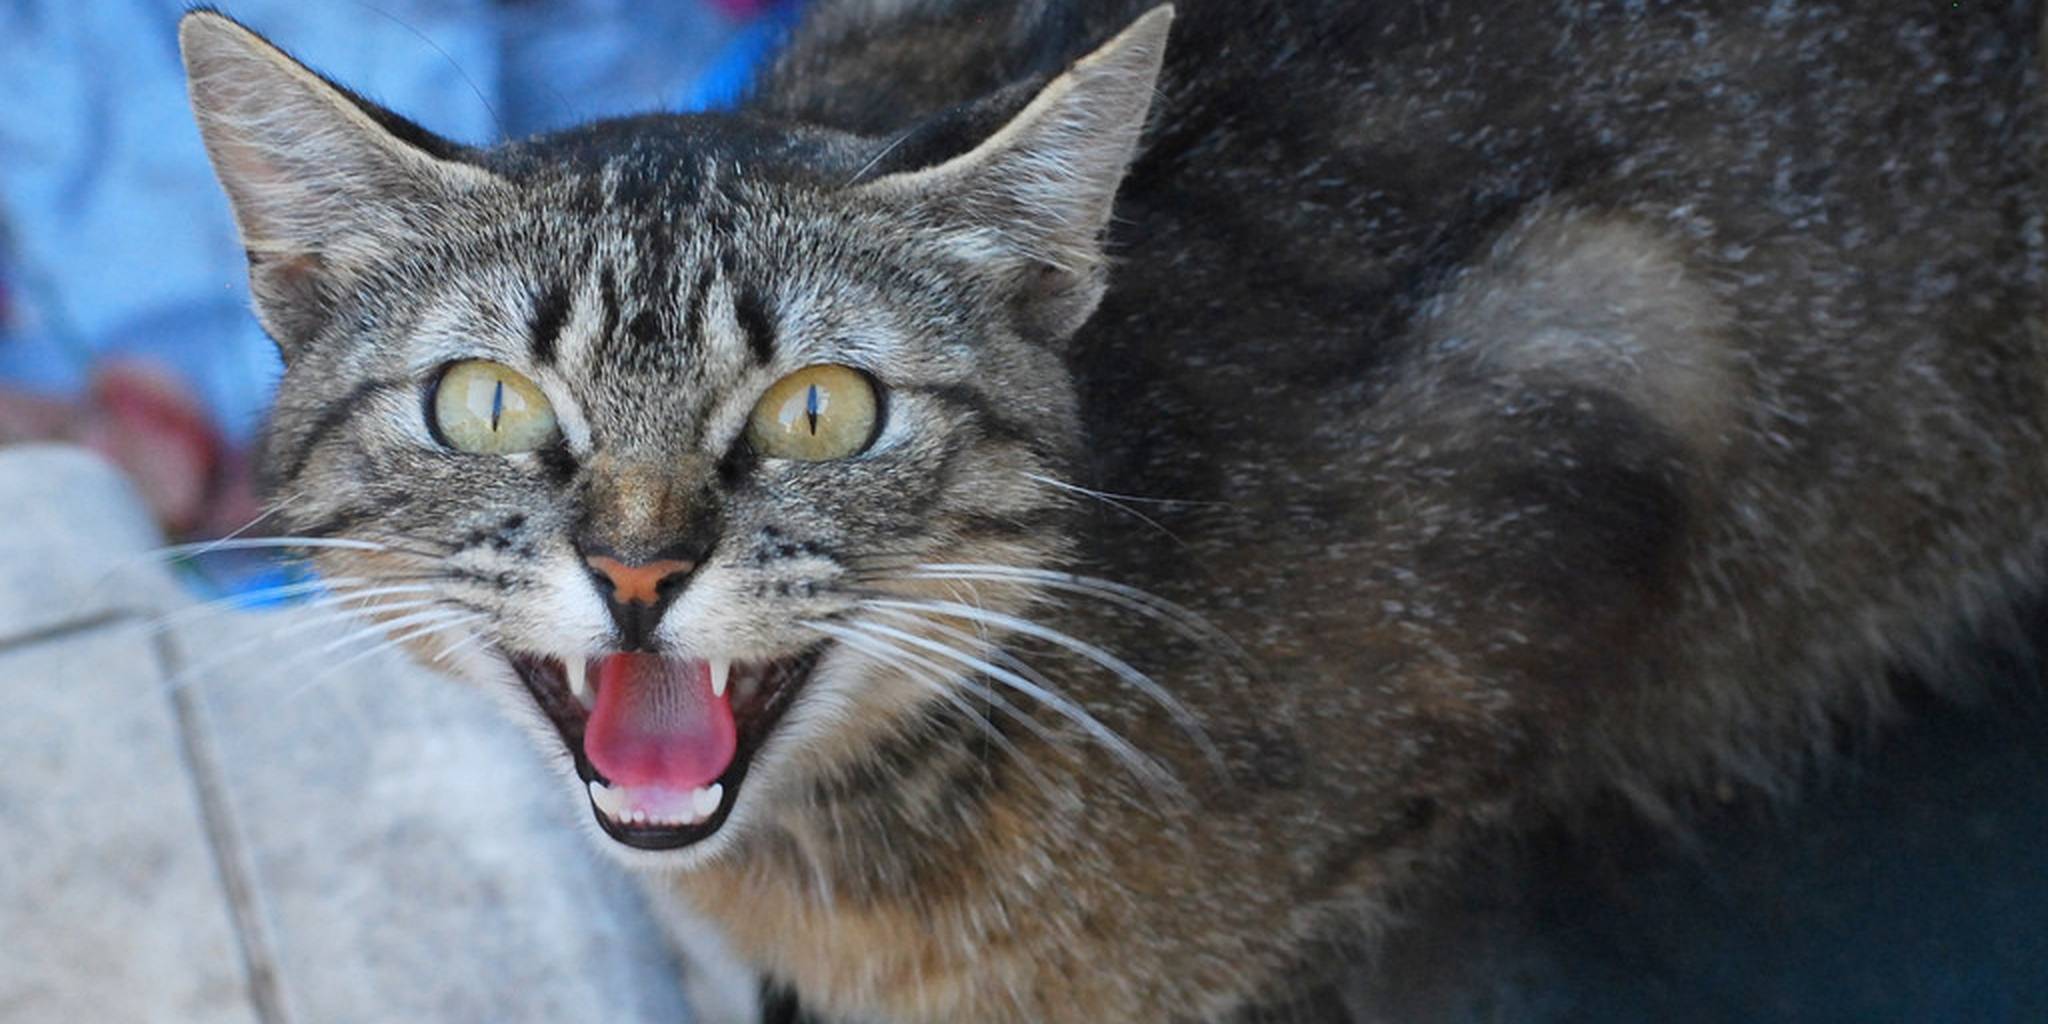 Кот стал агрессивным, нападает на хозяйку: почему кошка шипит, кидается, кусает хозяев без причины?